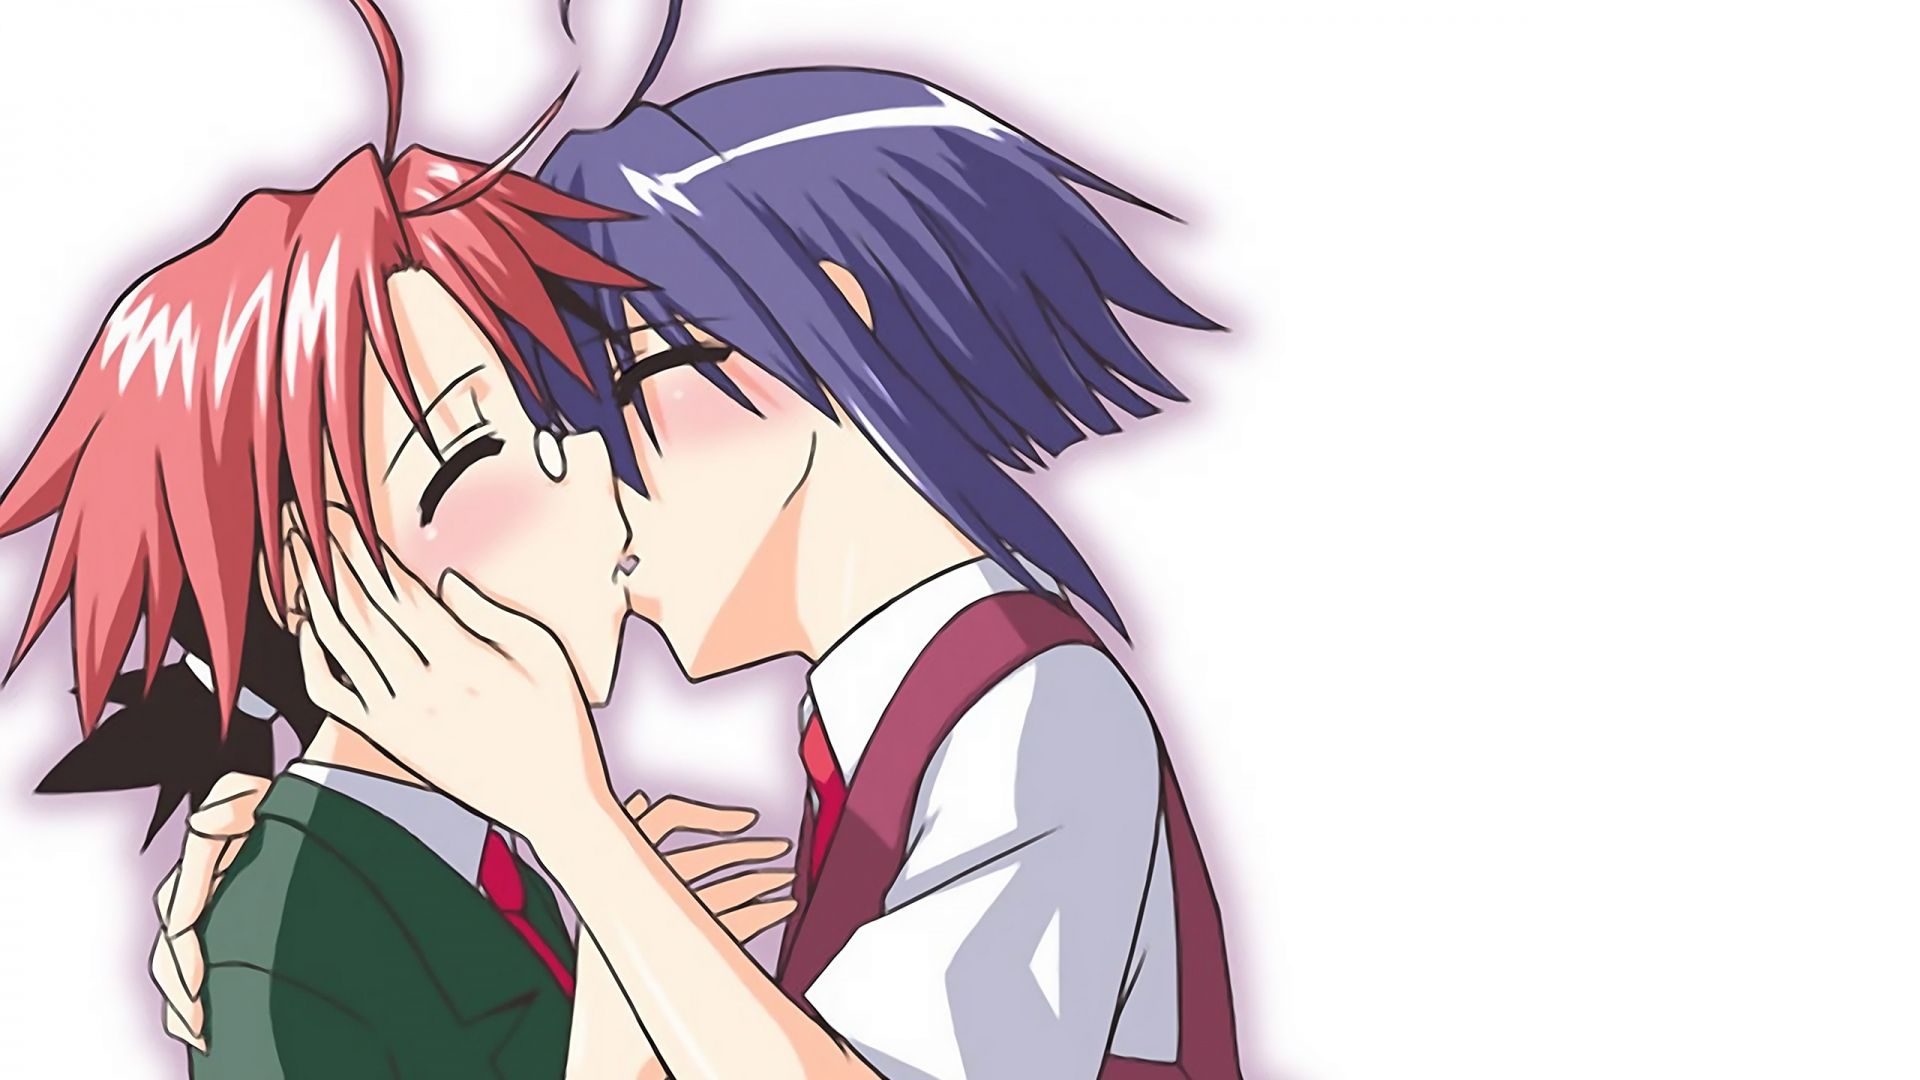 Wallpaper anime, boy, girl, kiss, tender